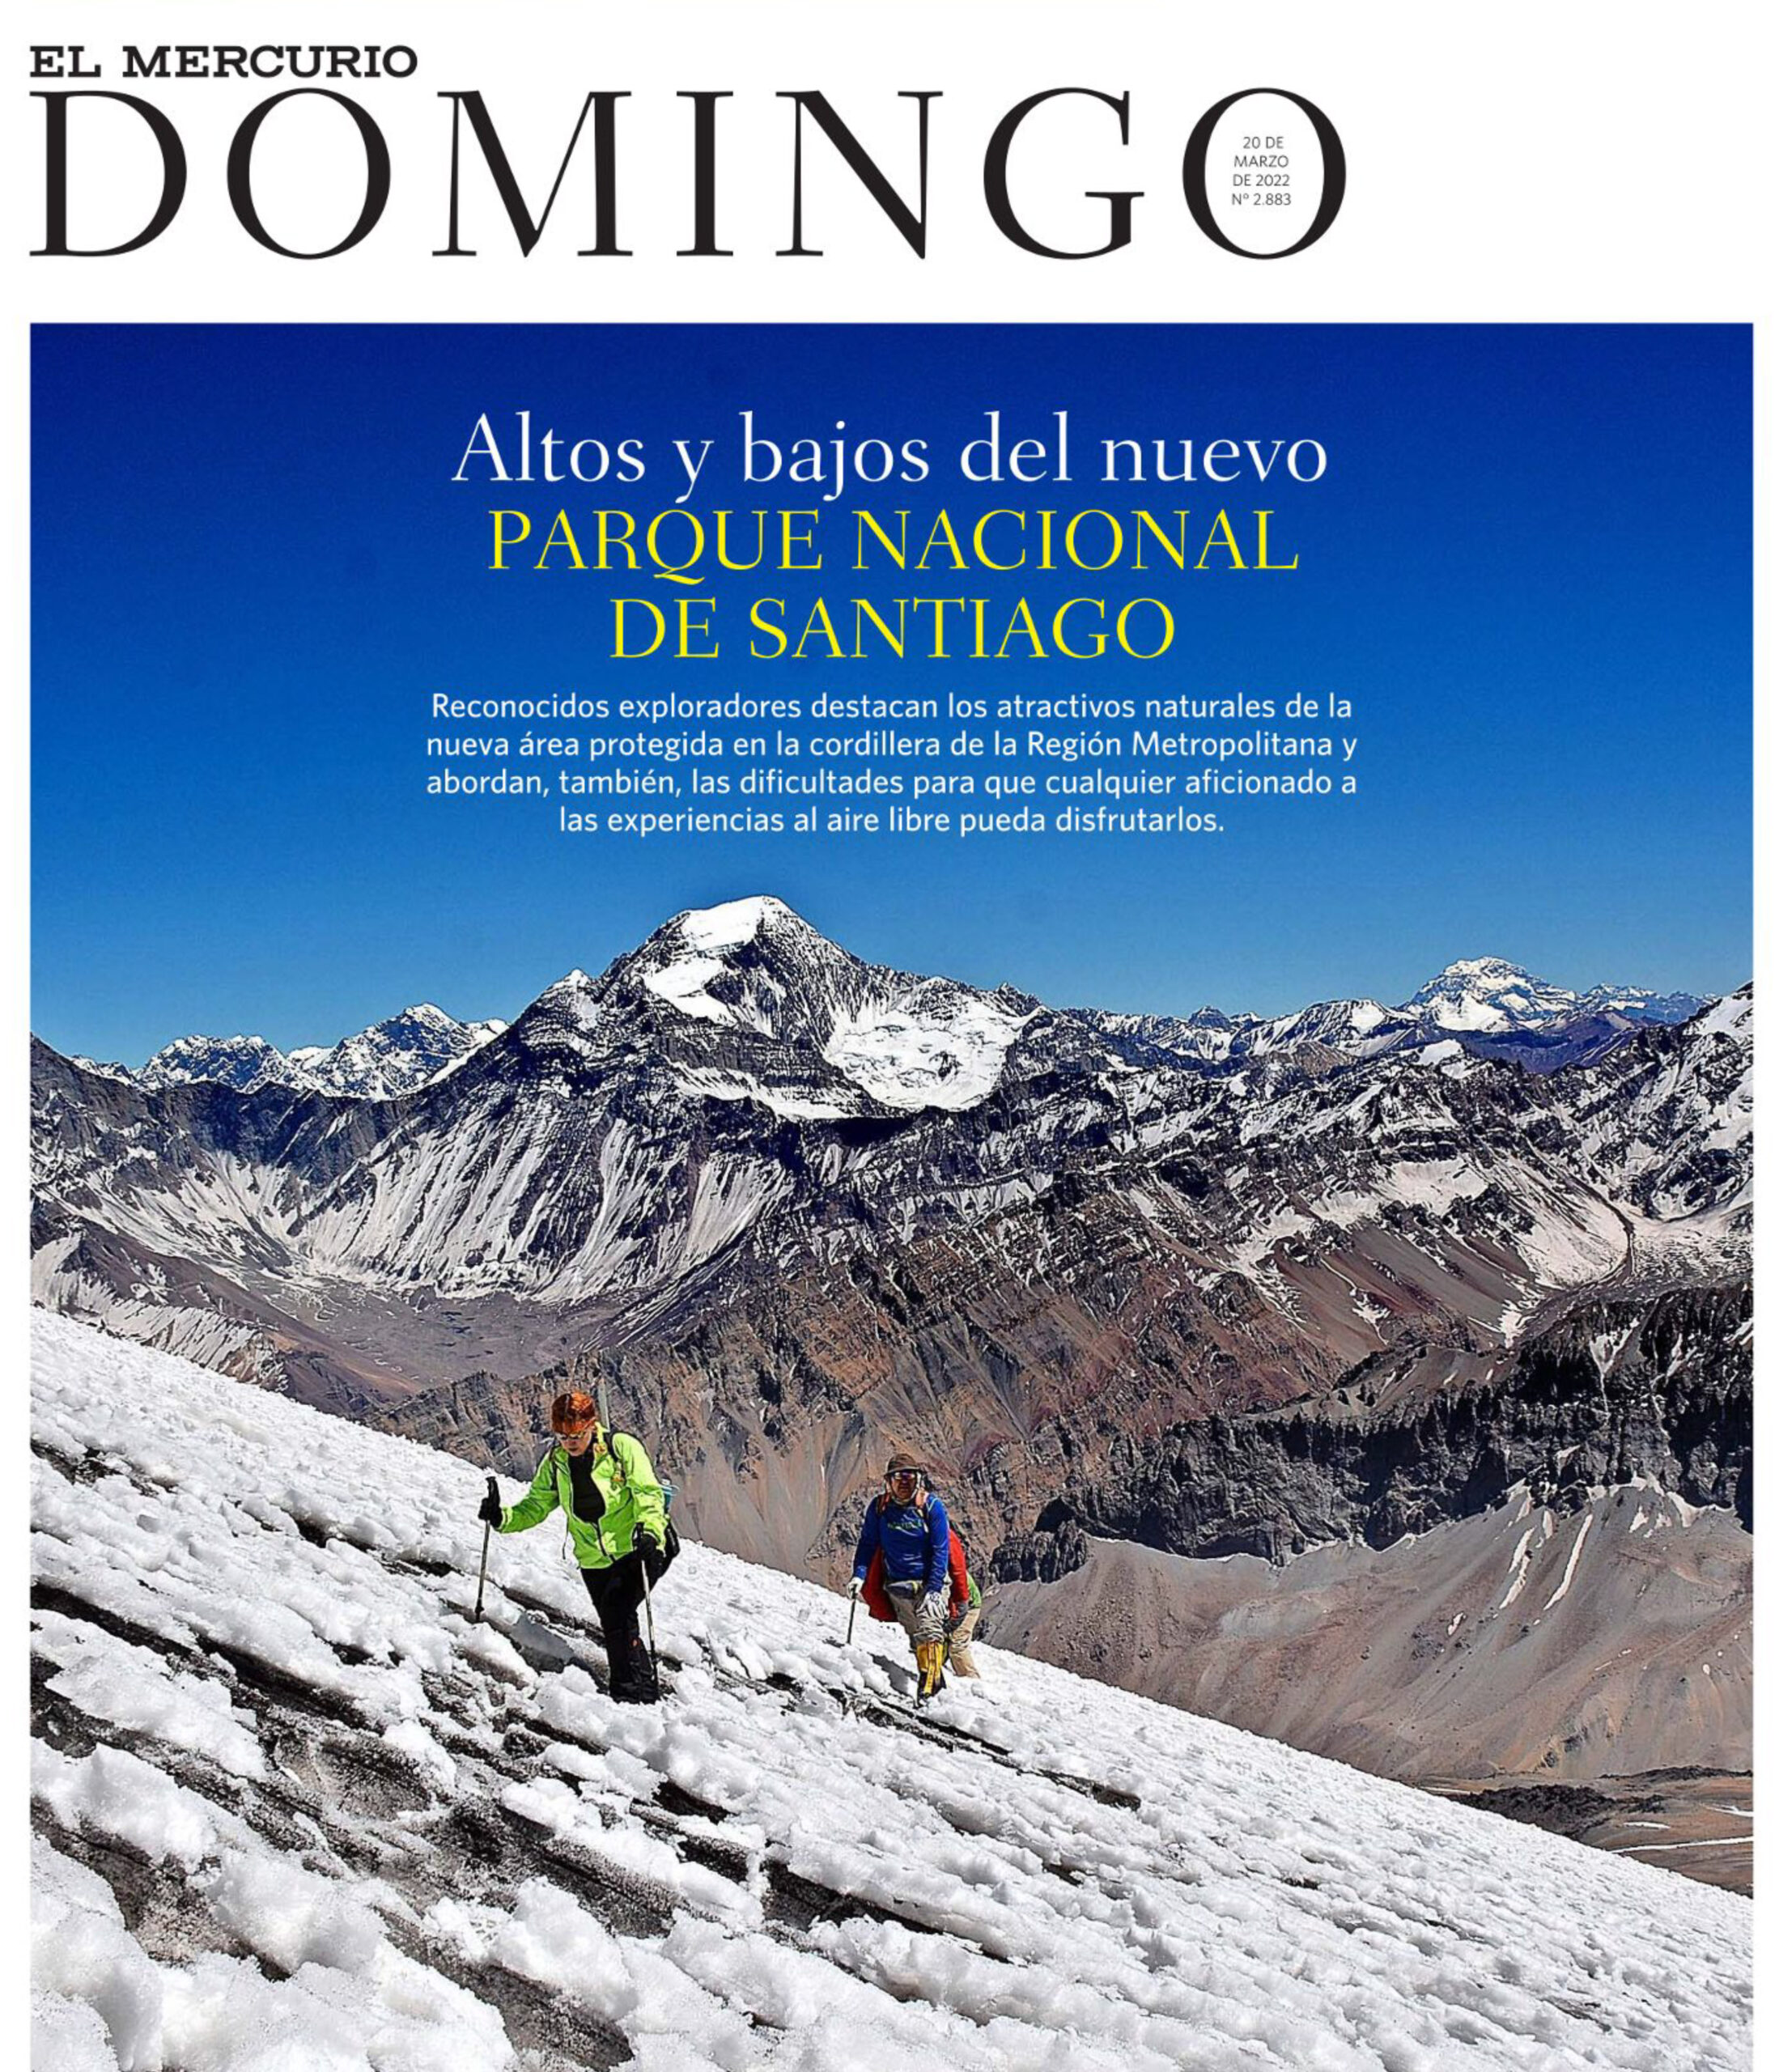 Lee aquí el reportaje “Altos y bajos del nuevo Parque Nacional de Santiago”, en Revista Domingo